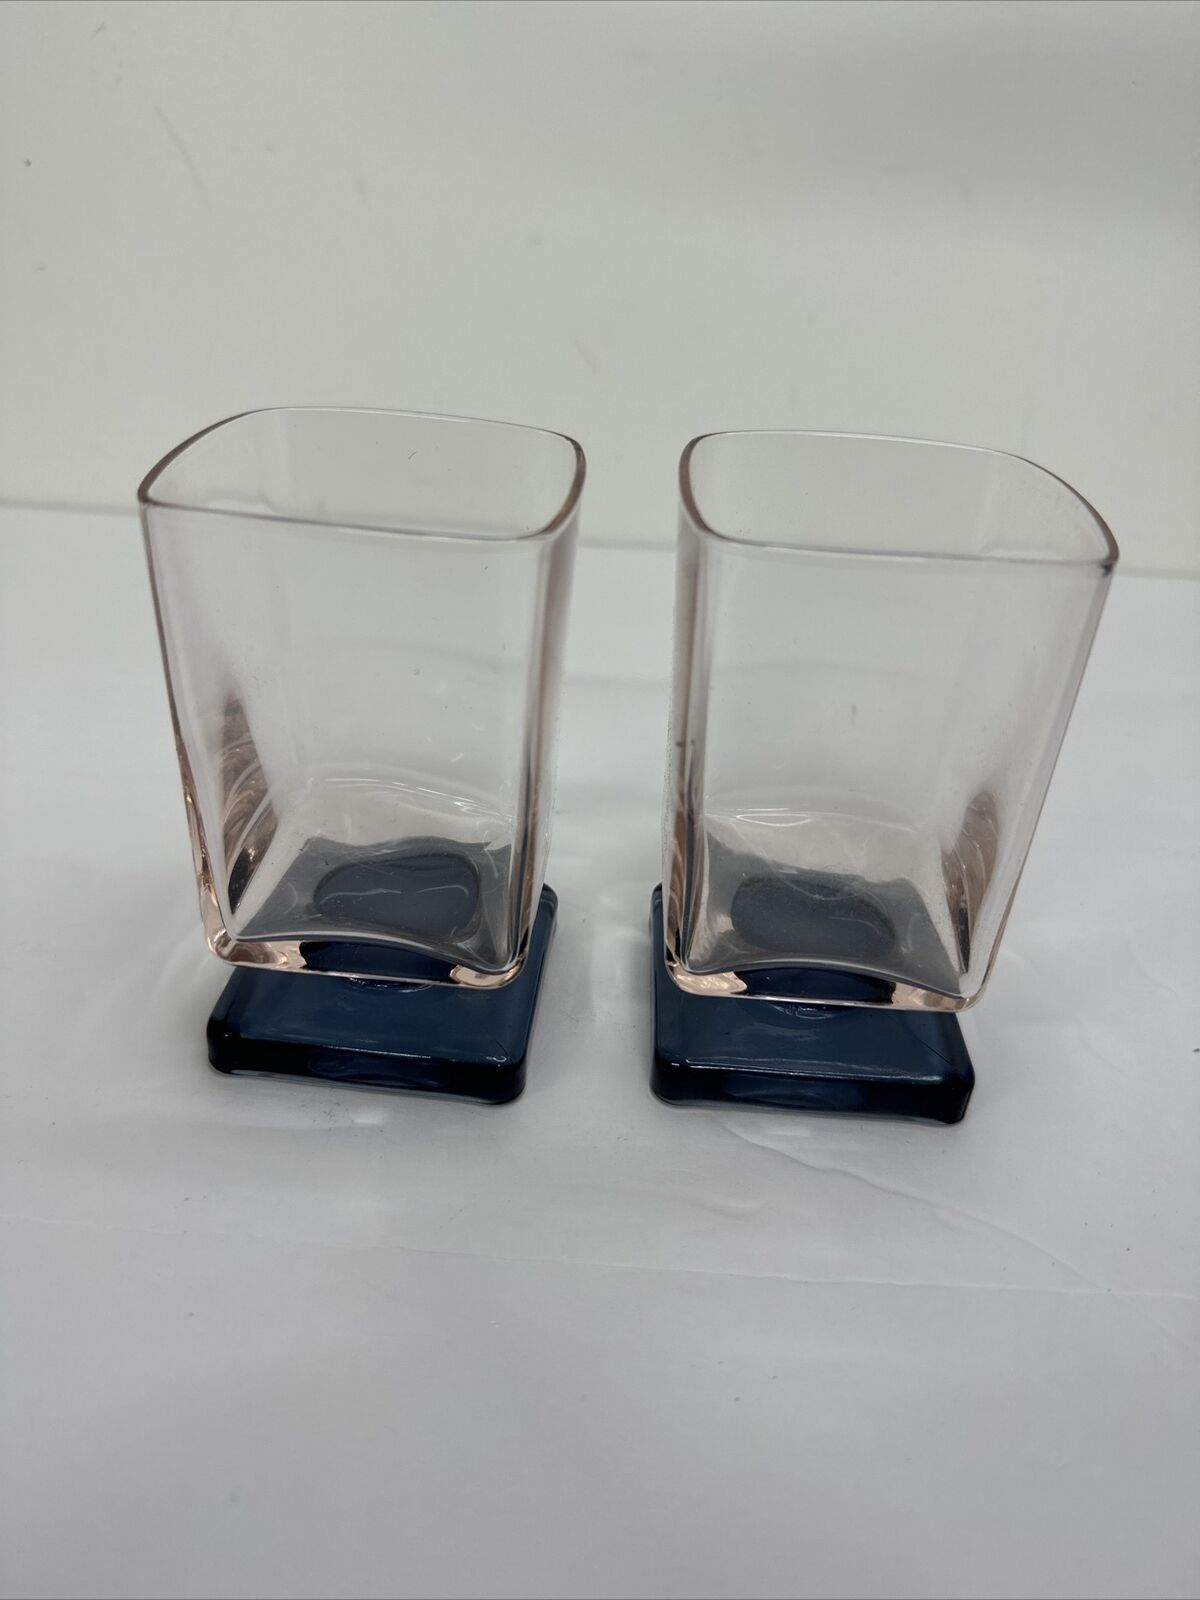 DiSaronno Amaretto Glasses Pink Hue Blue Square Pedestal Base Set 2 Vintage 4”